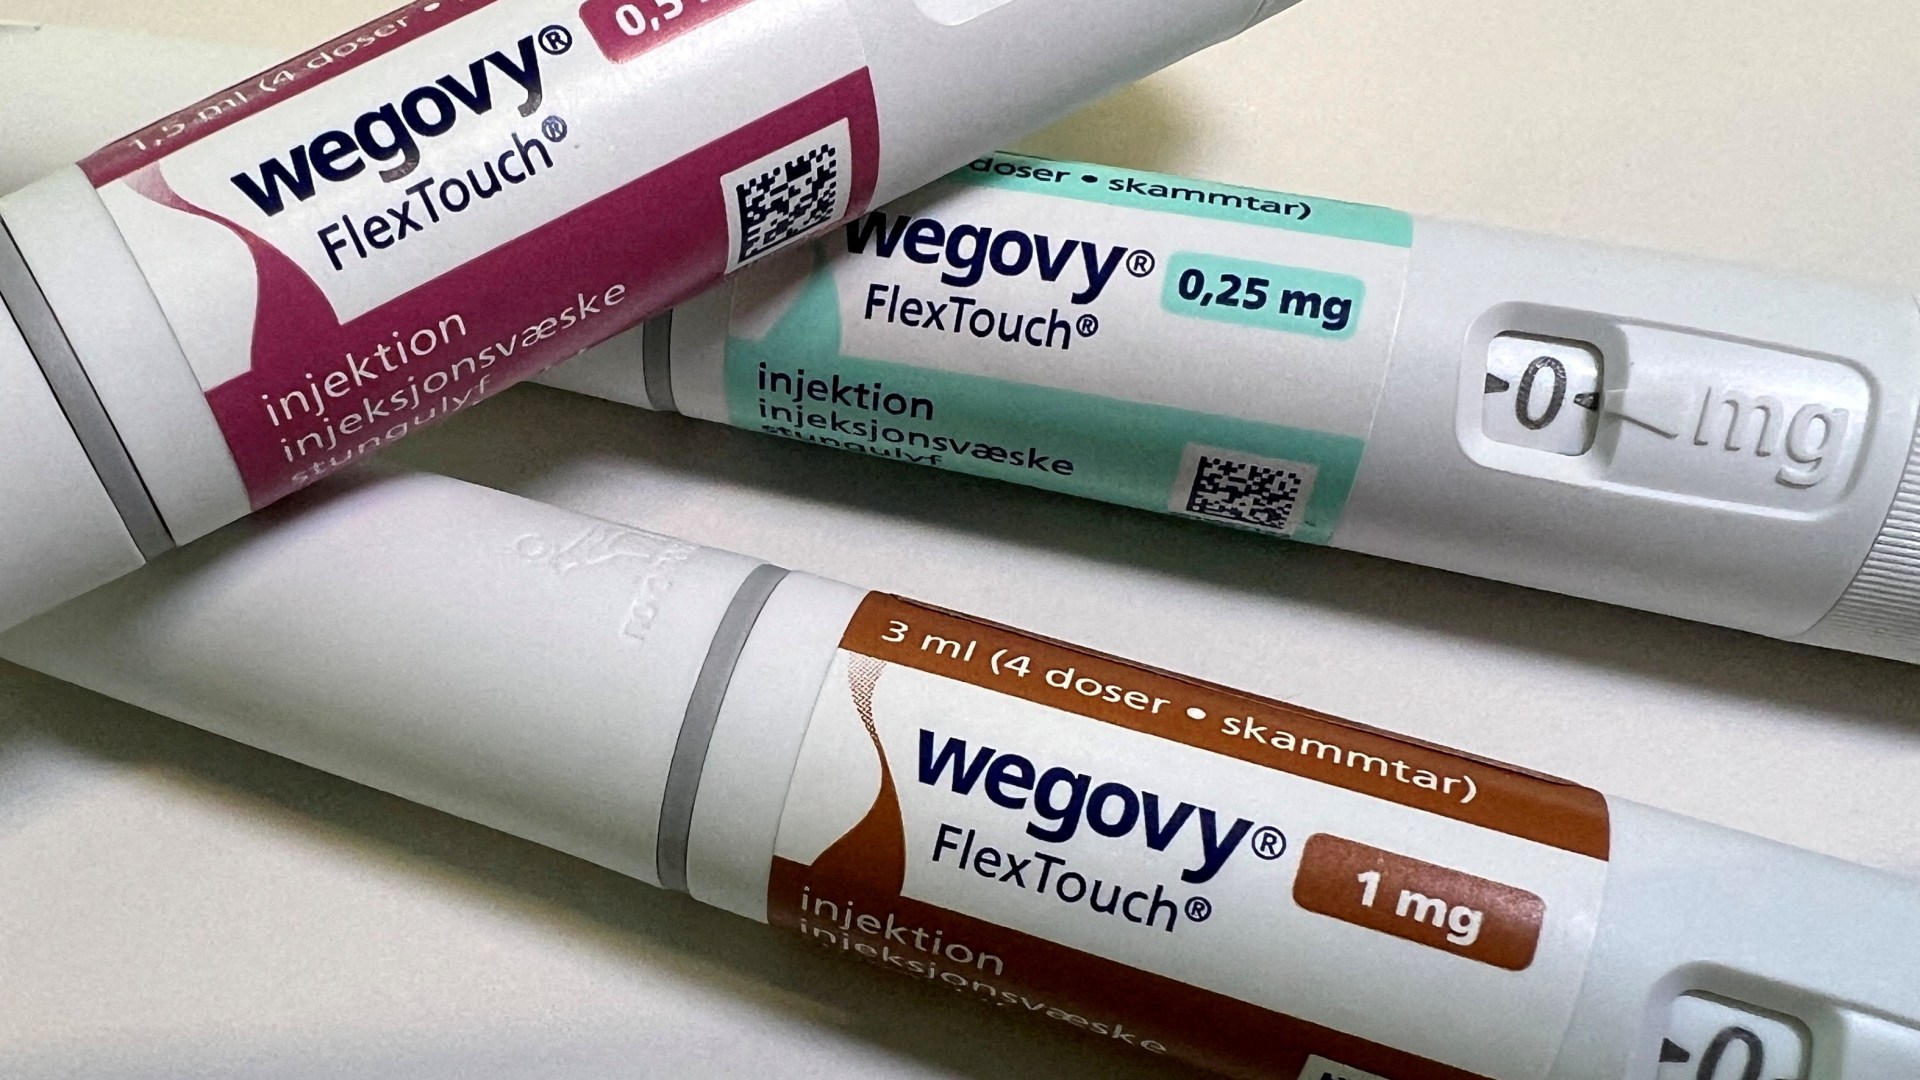 Las inyecciones para la enfermedad como Wegovy reducen el riesgo de padecer 10 tipos de cáncer más que otros fármacos, según un estudio